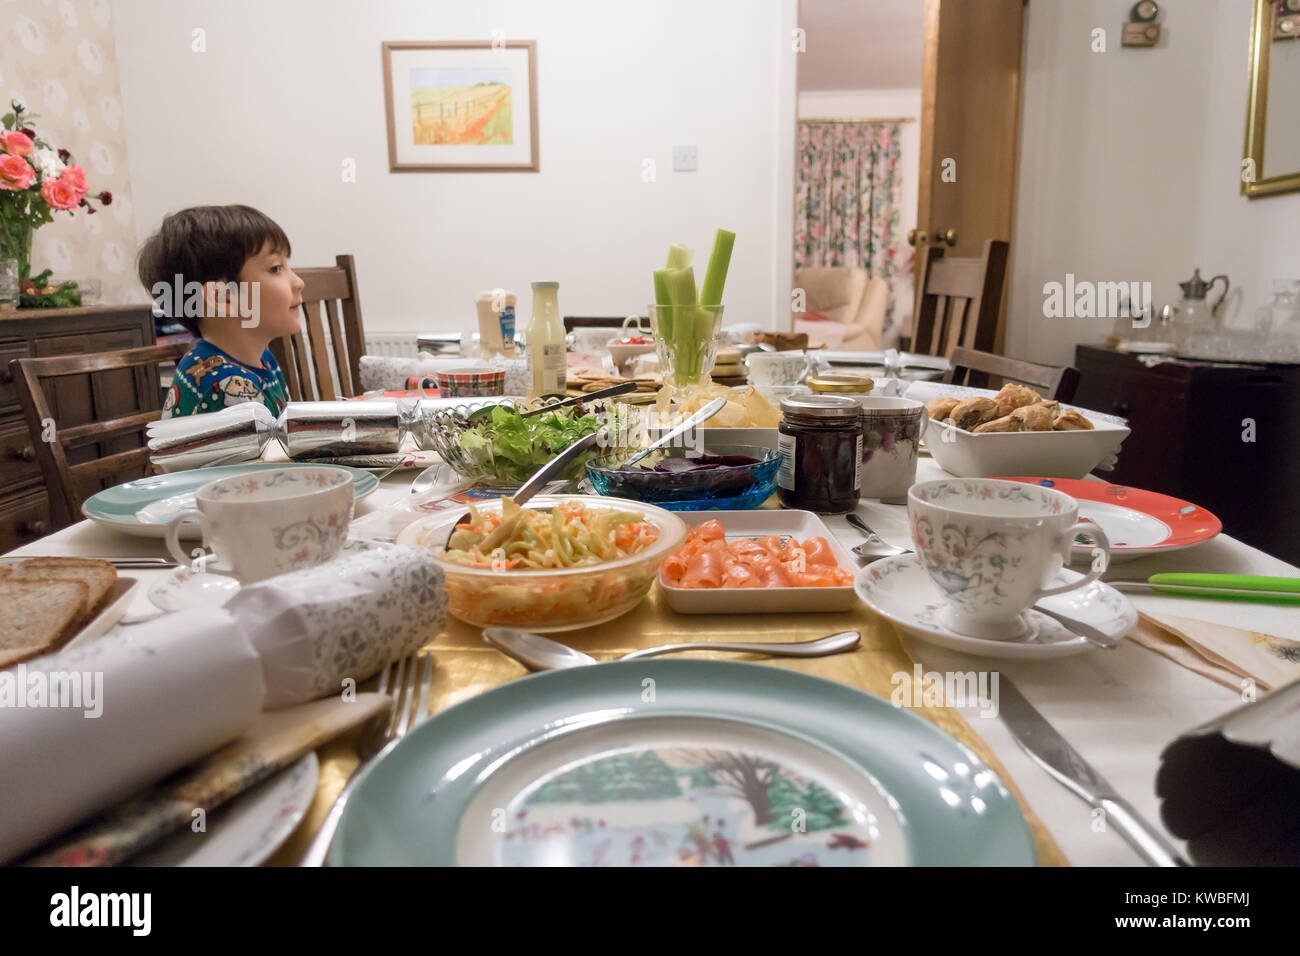 Un ragazzo si siede e attende palesemente al tavolo da pranzo per il resto della sua famiglia ad unirsi a lui per mangiare tè di Natale costituito da insalata. Foto Stock